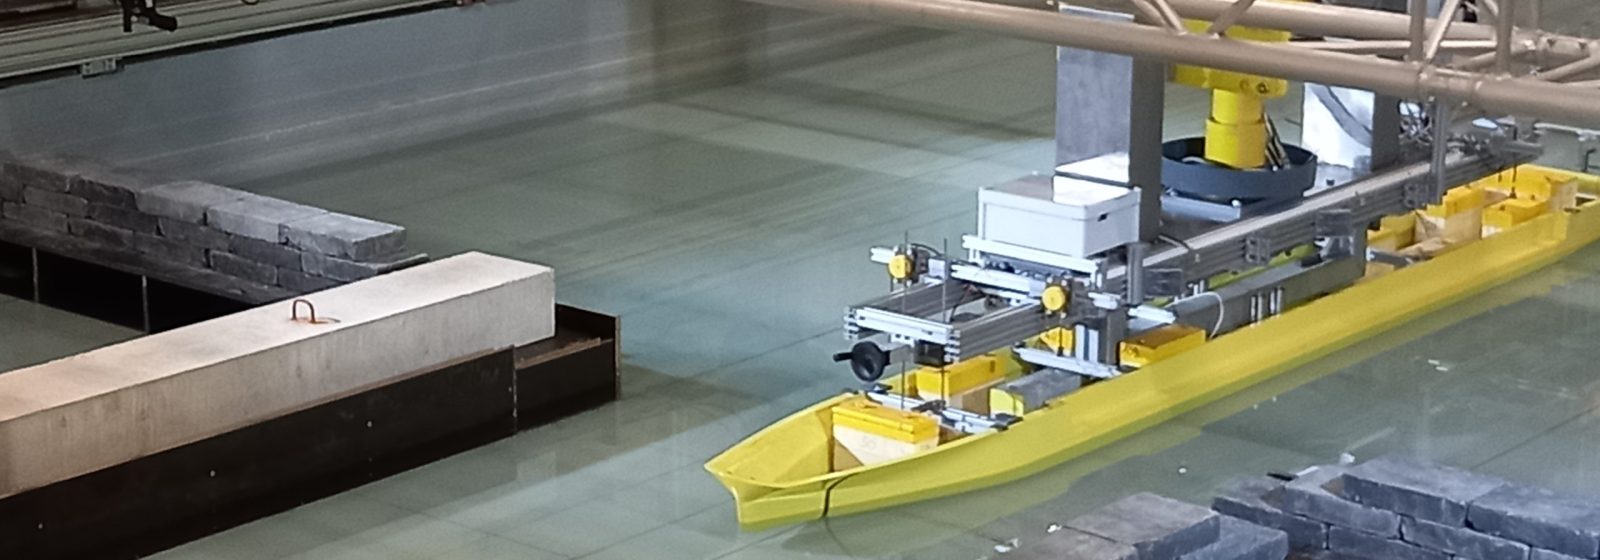 Het model van de X-Barge wordt voortbewogen door de sleepwagen in een gesimuleerd kanaal.